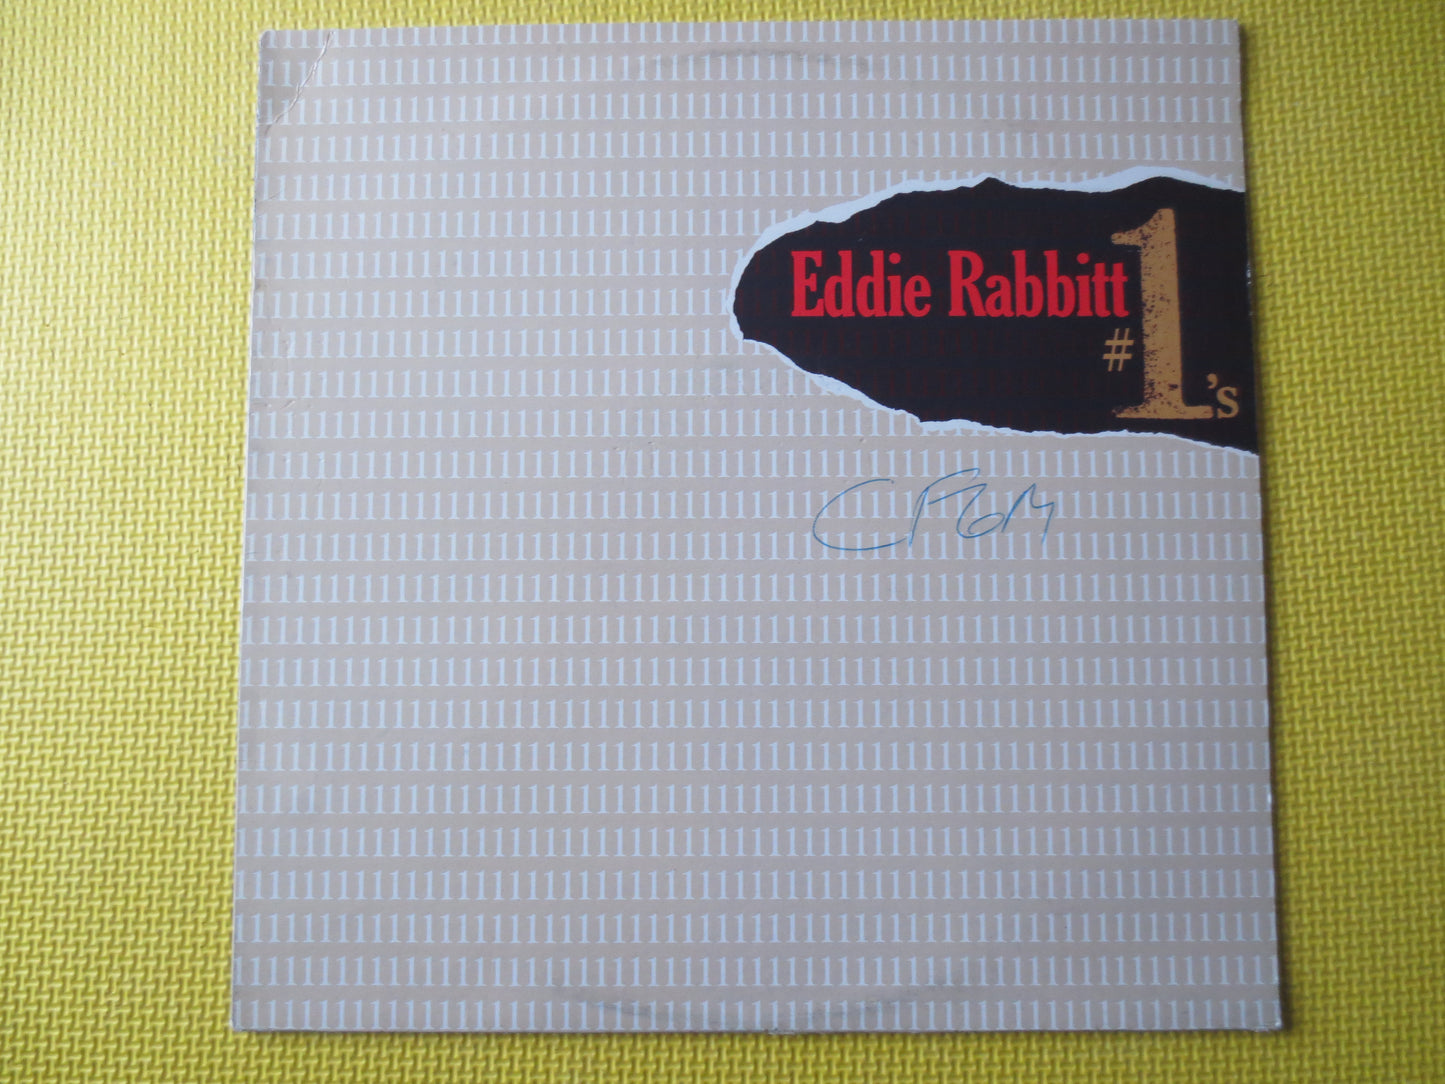 EDDIE RABBITT, Number ONE's, Eddie Rabbitt Record, Country Records, Eddie Rabbitt Album, Eddie Rabbitt Lp, Lp, 1985 Records